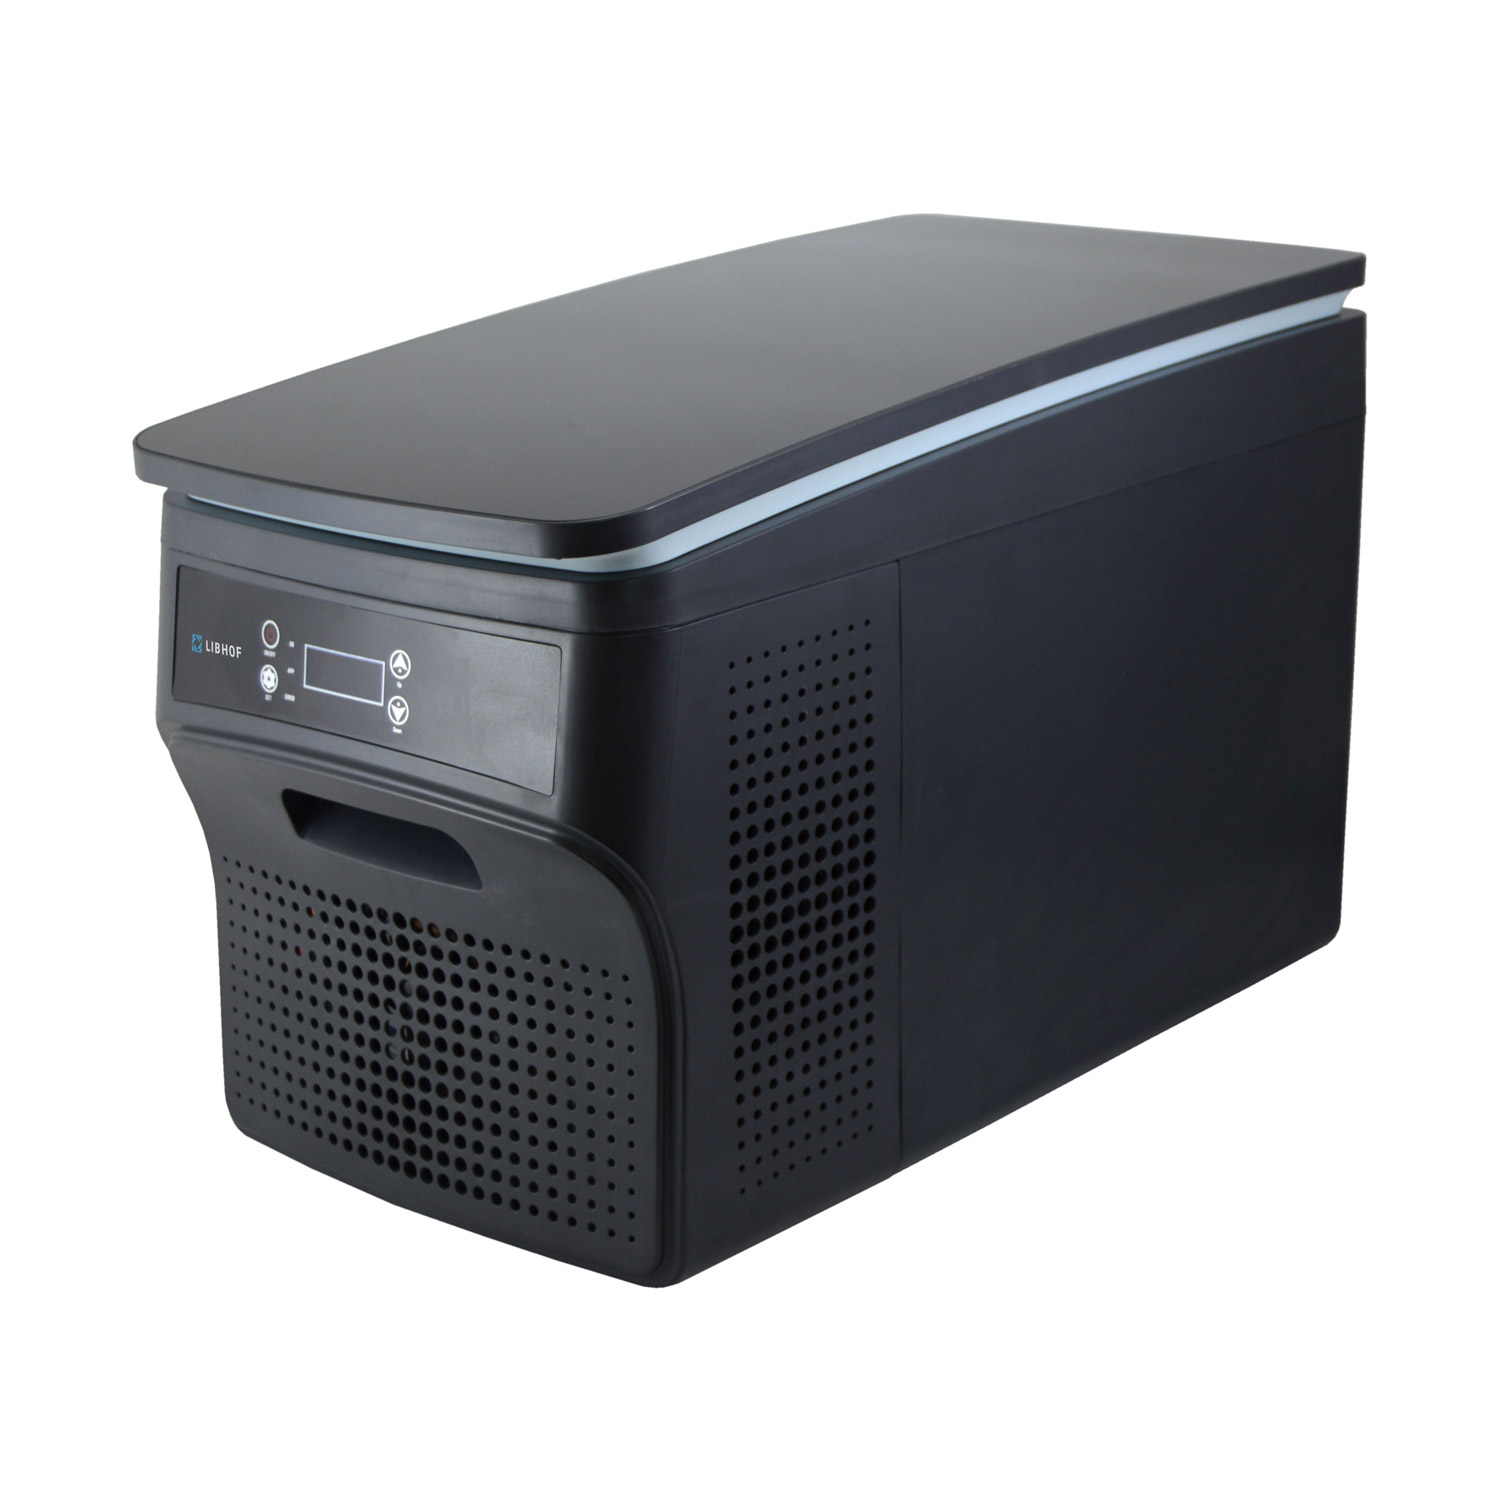 Автохолодильник портативный компрессорный с 2 отделениями Libhof Q-26 605х320х395мм 29л 12/24В -25/+10°C темно-серый